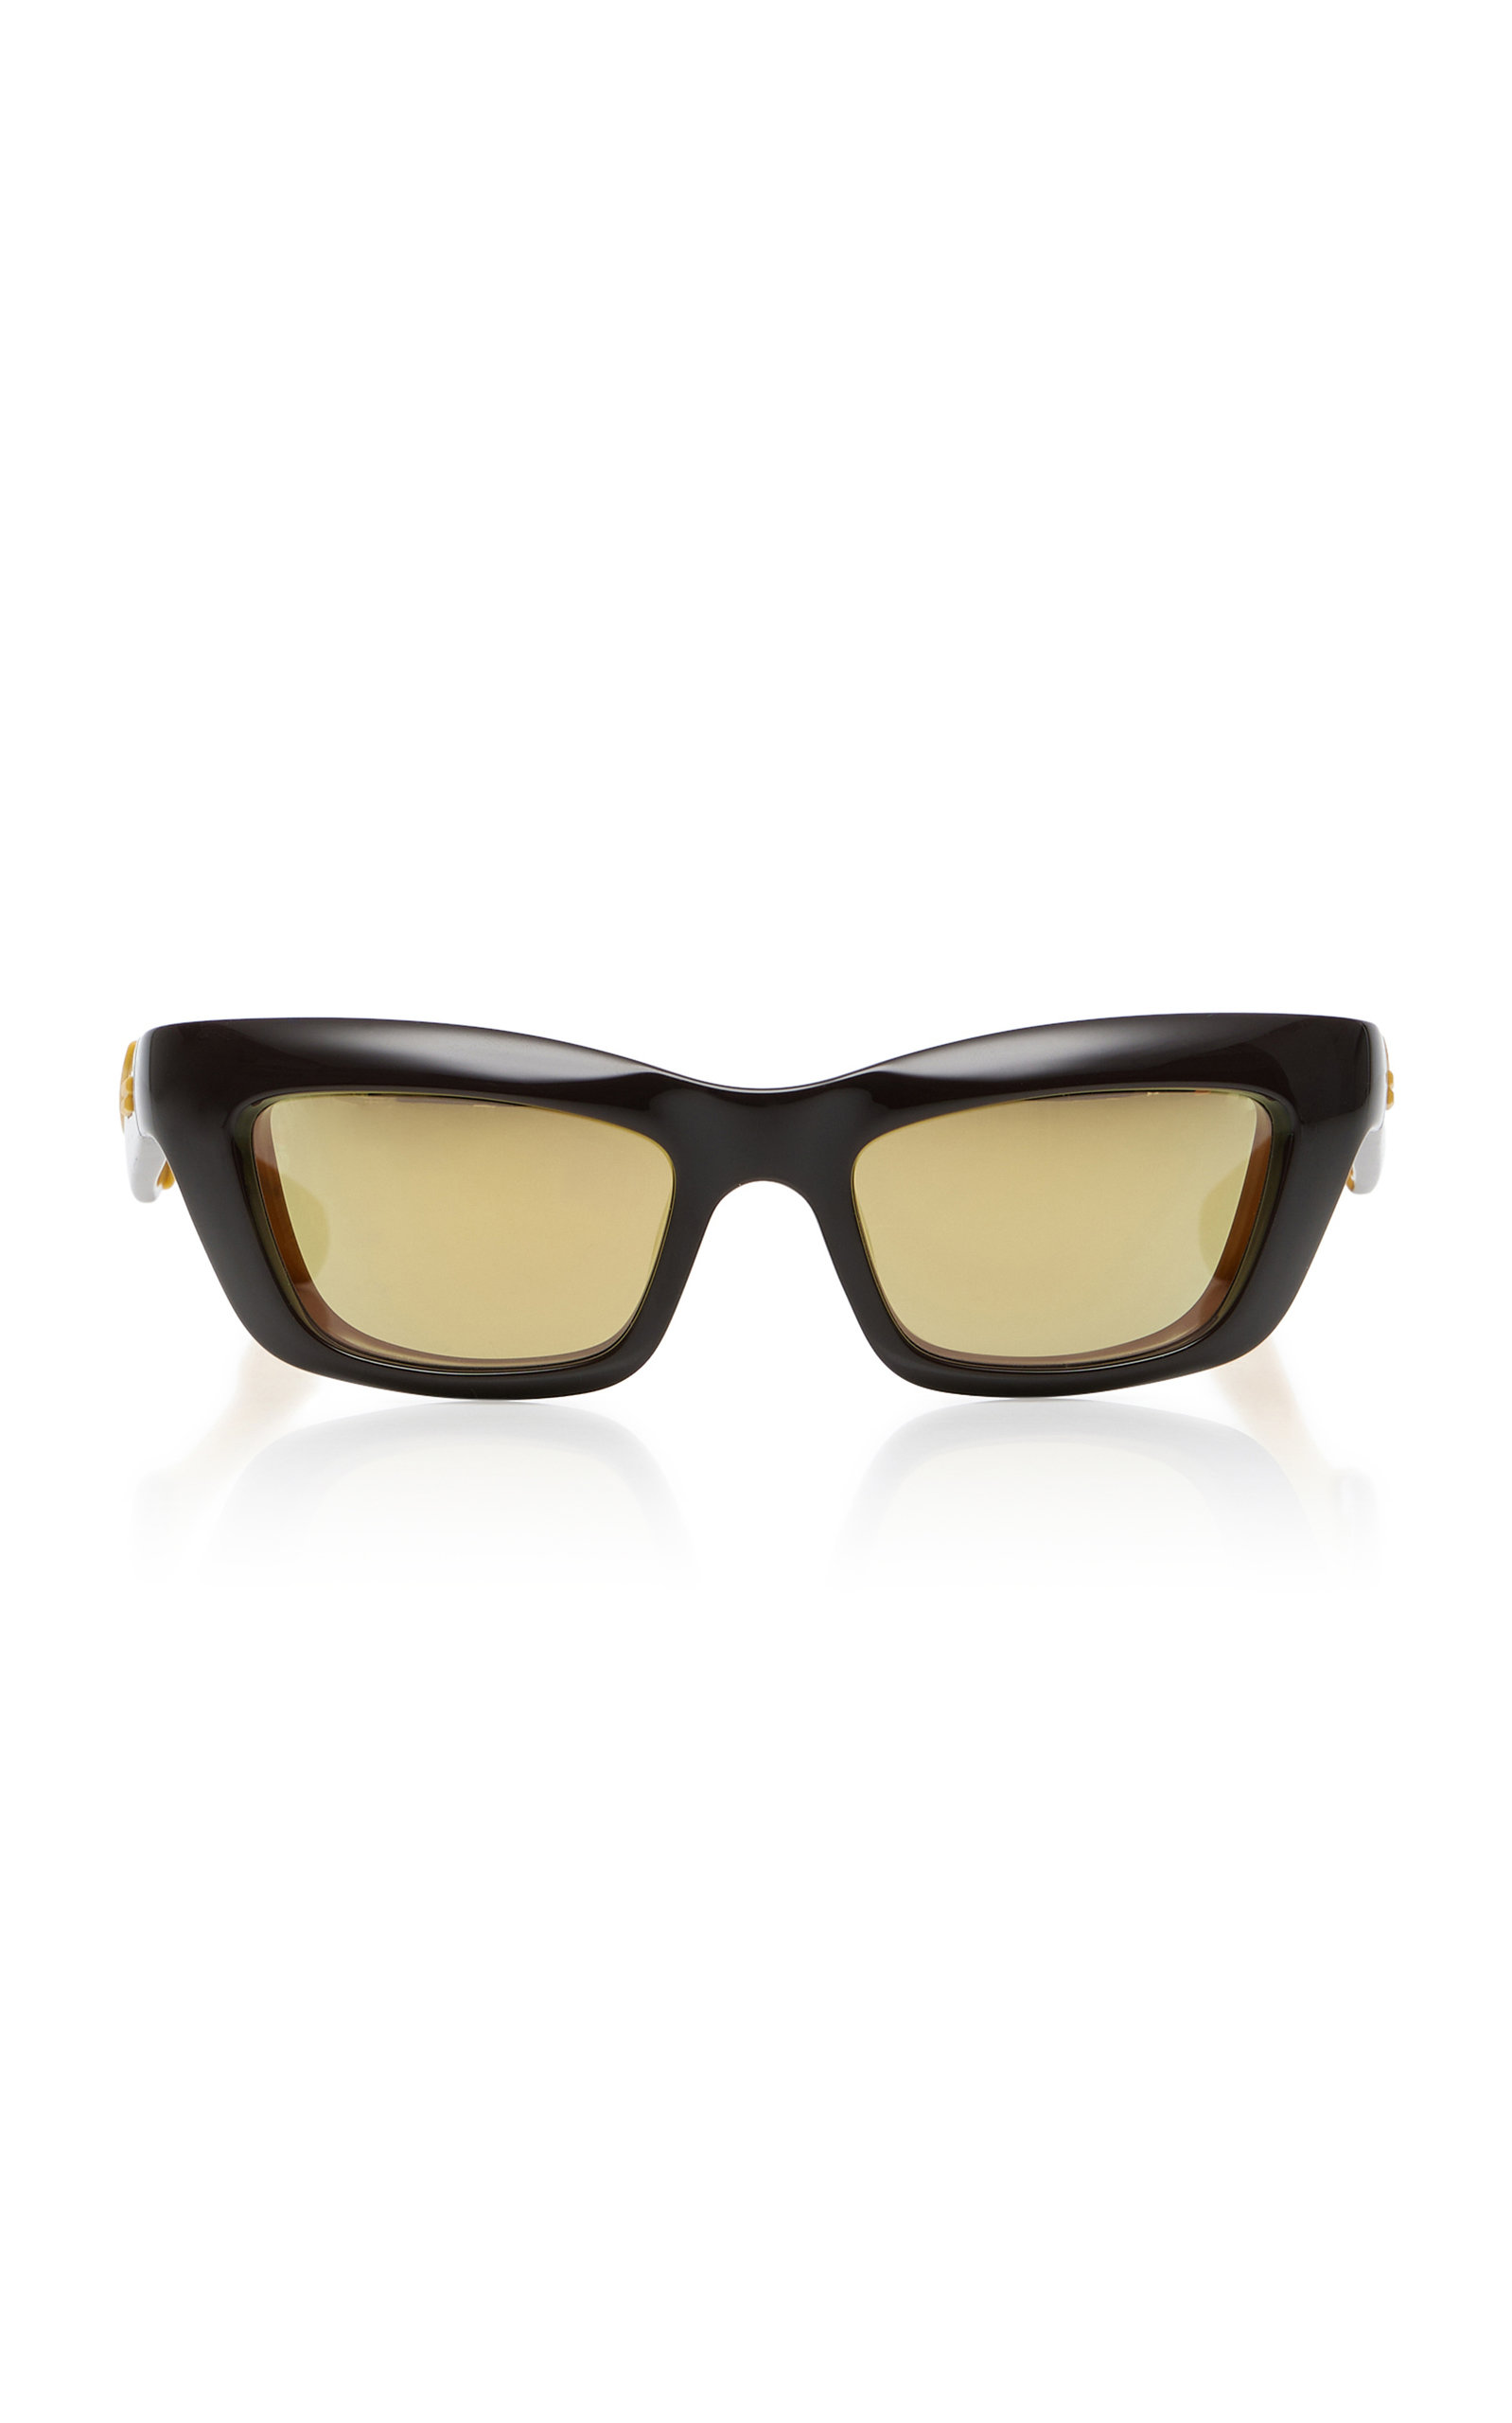 Bottega Veneta - Women's Rectangular-Frame Acetate Sunglasses - Brown - OS - Moda Operandi